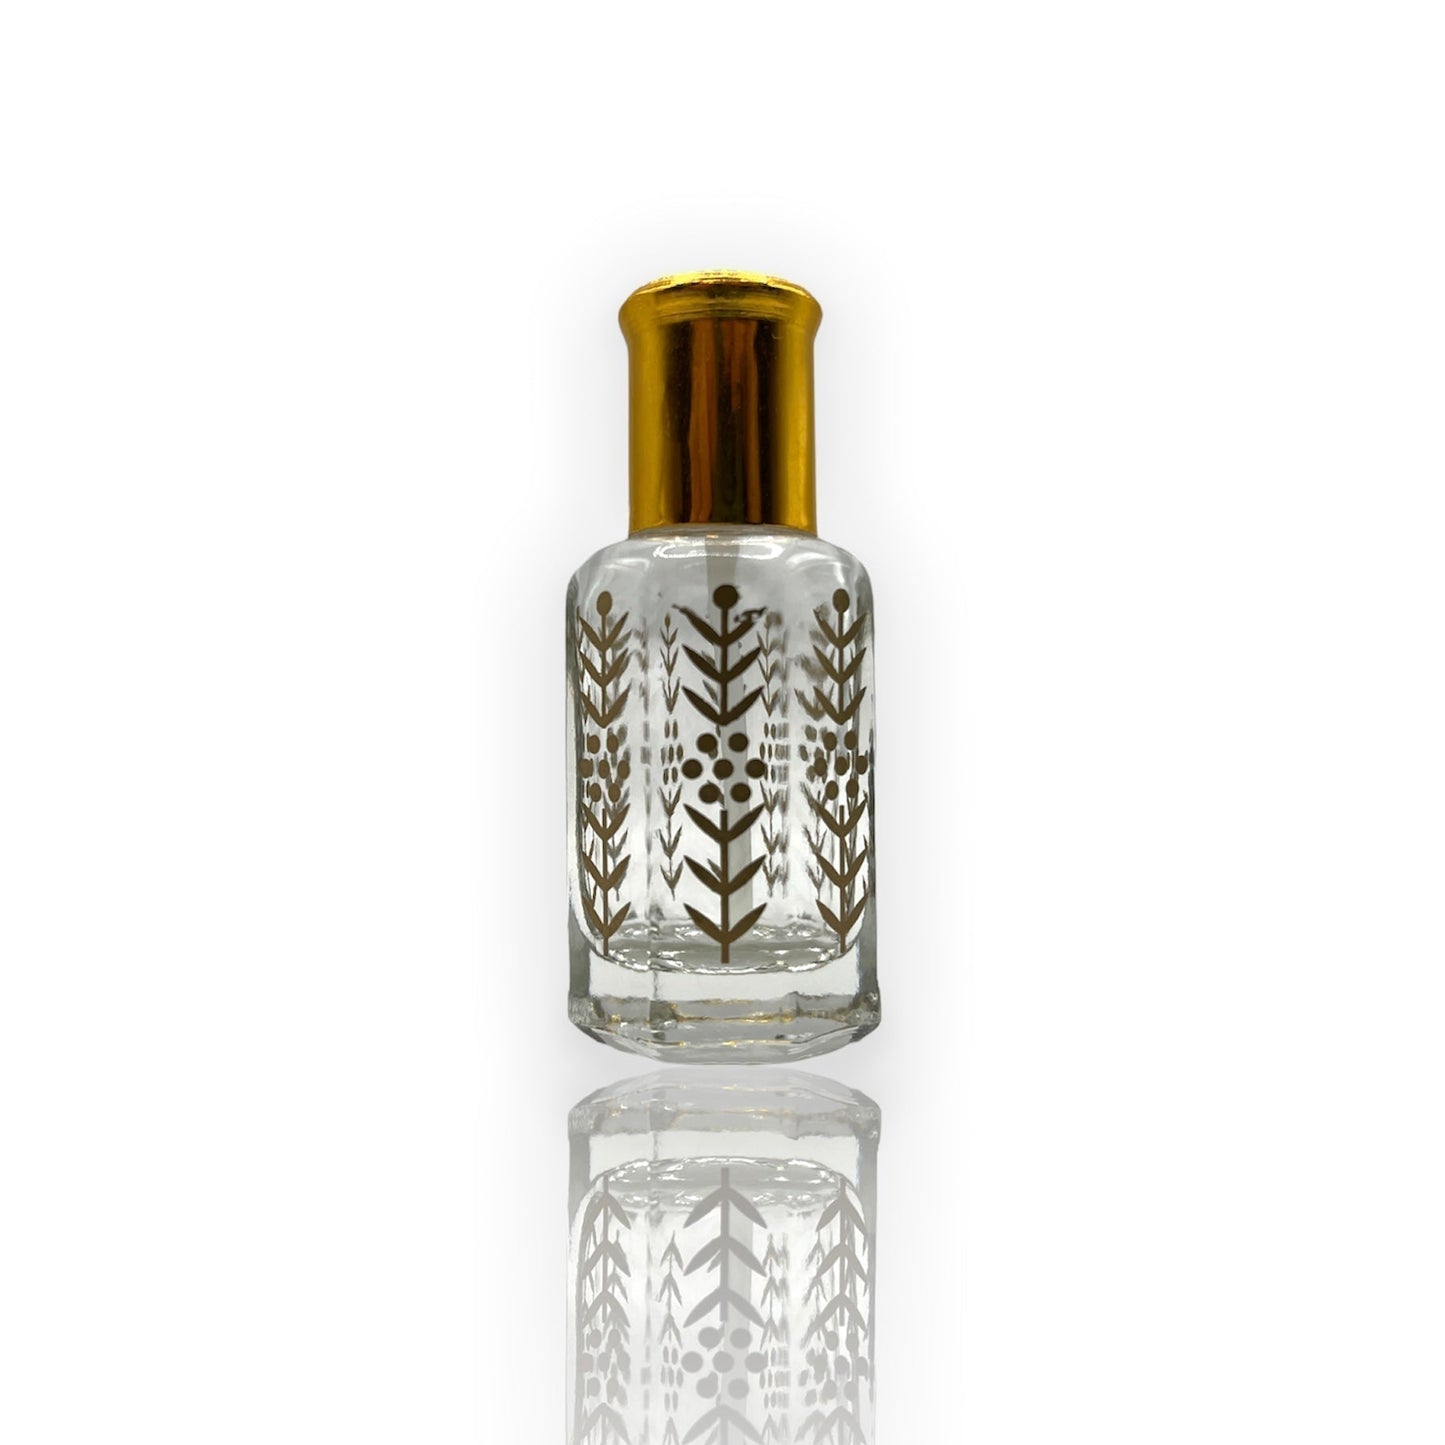 M-41 Öl Parfüm *Inspiriert Von Naxos